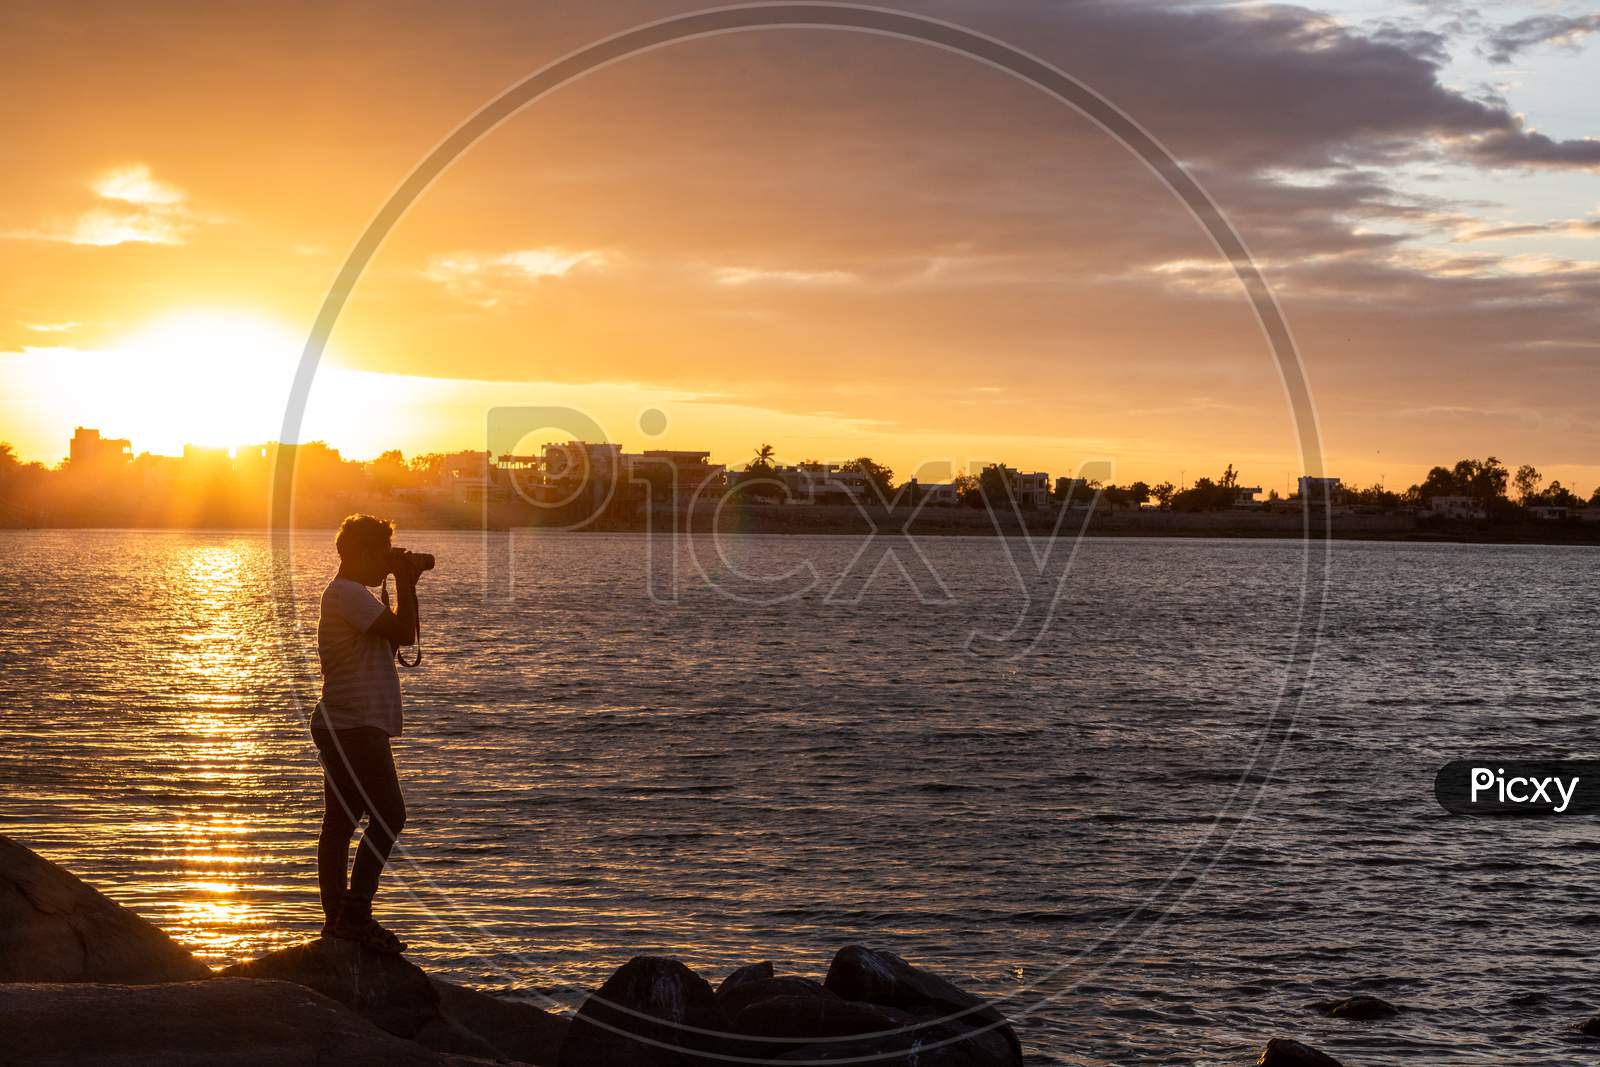 Indian Photographer Man shooting during sunset